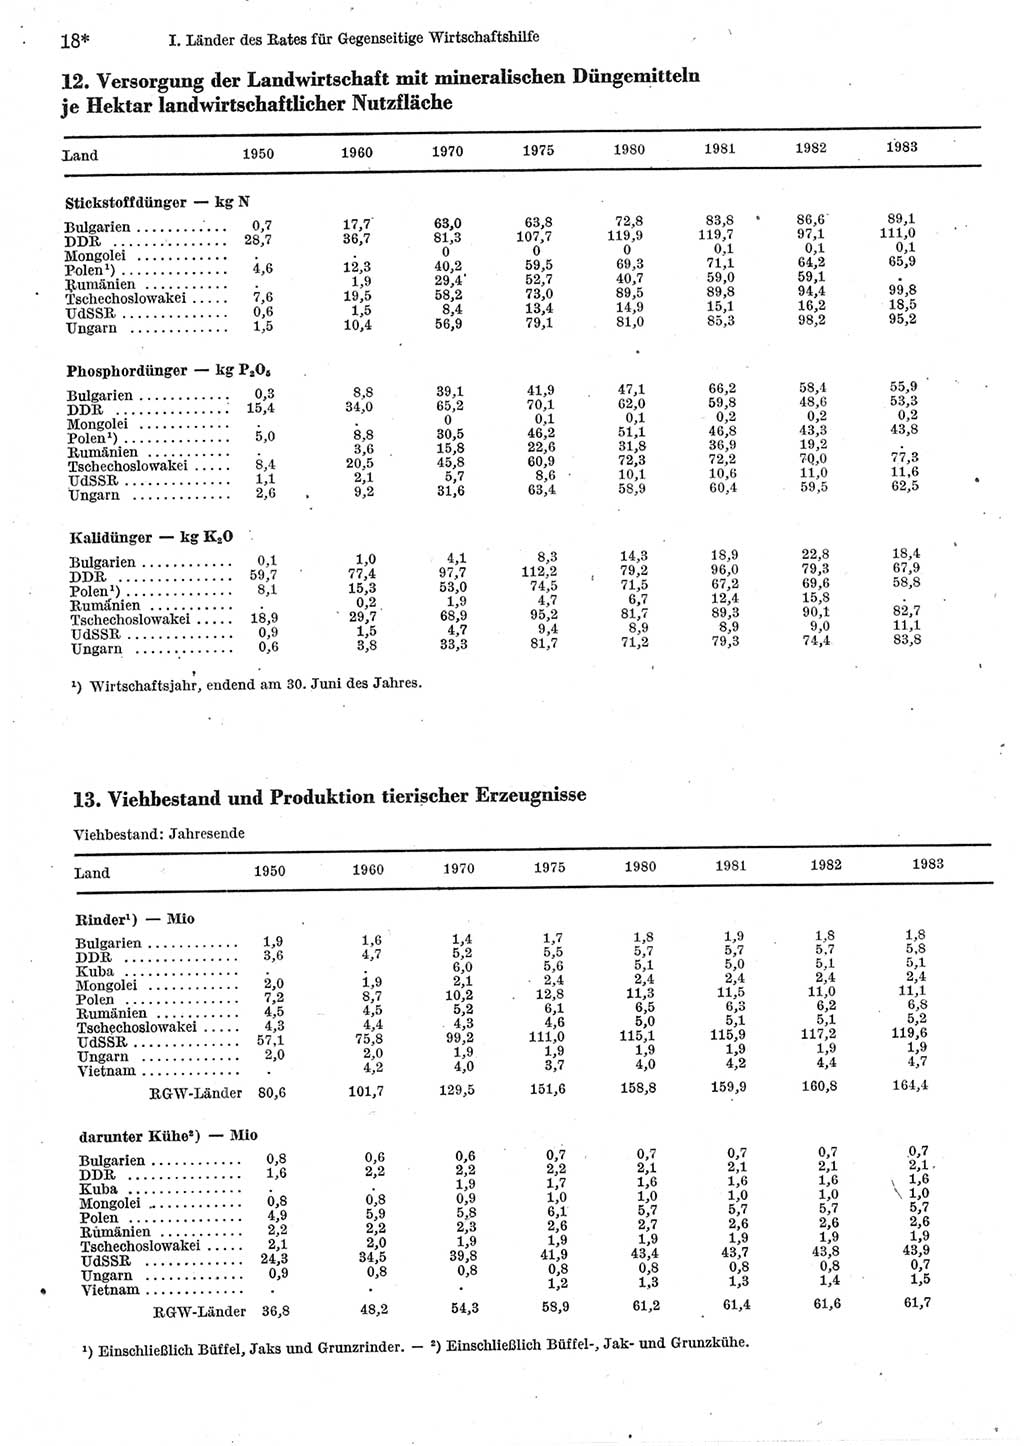 Statistisches Jahrbuch der Deutschen Demokratischen Republik (DDR) 1985, Seite 18 (Stat. Jb. DDR 1985, S. 18)